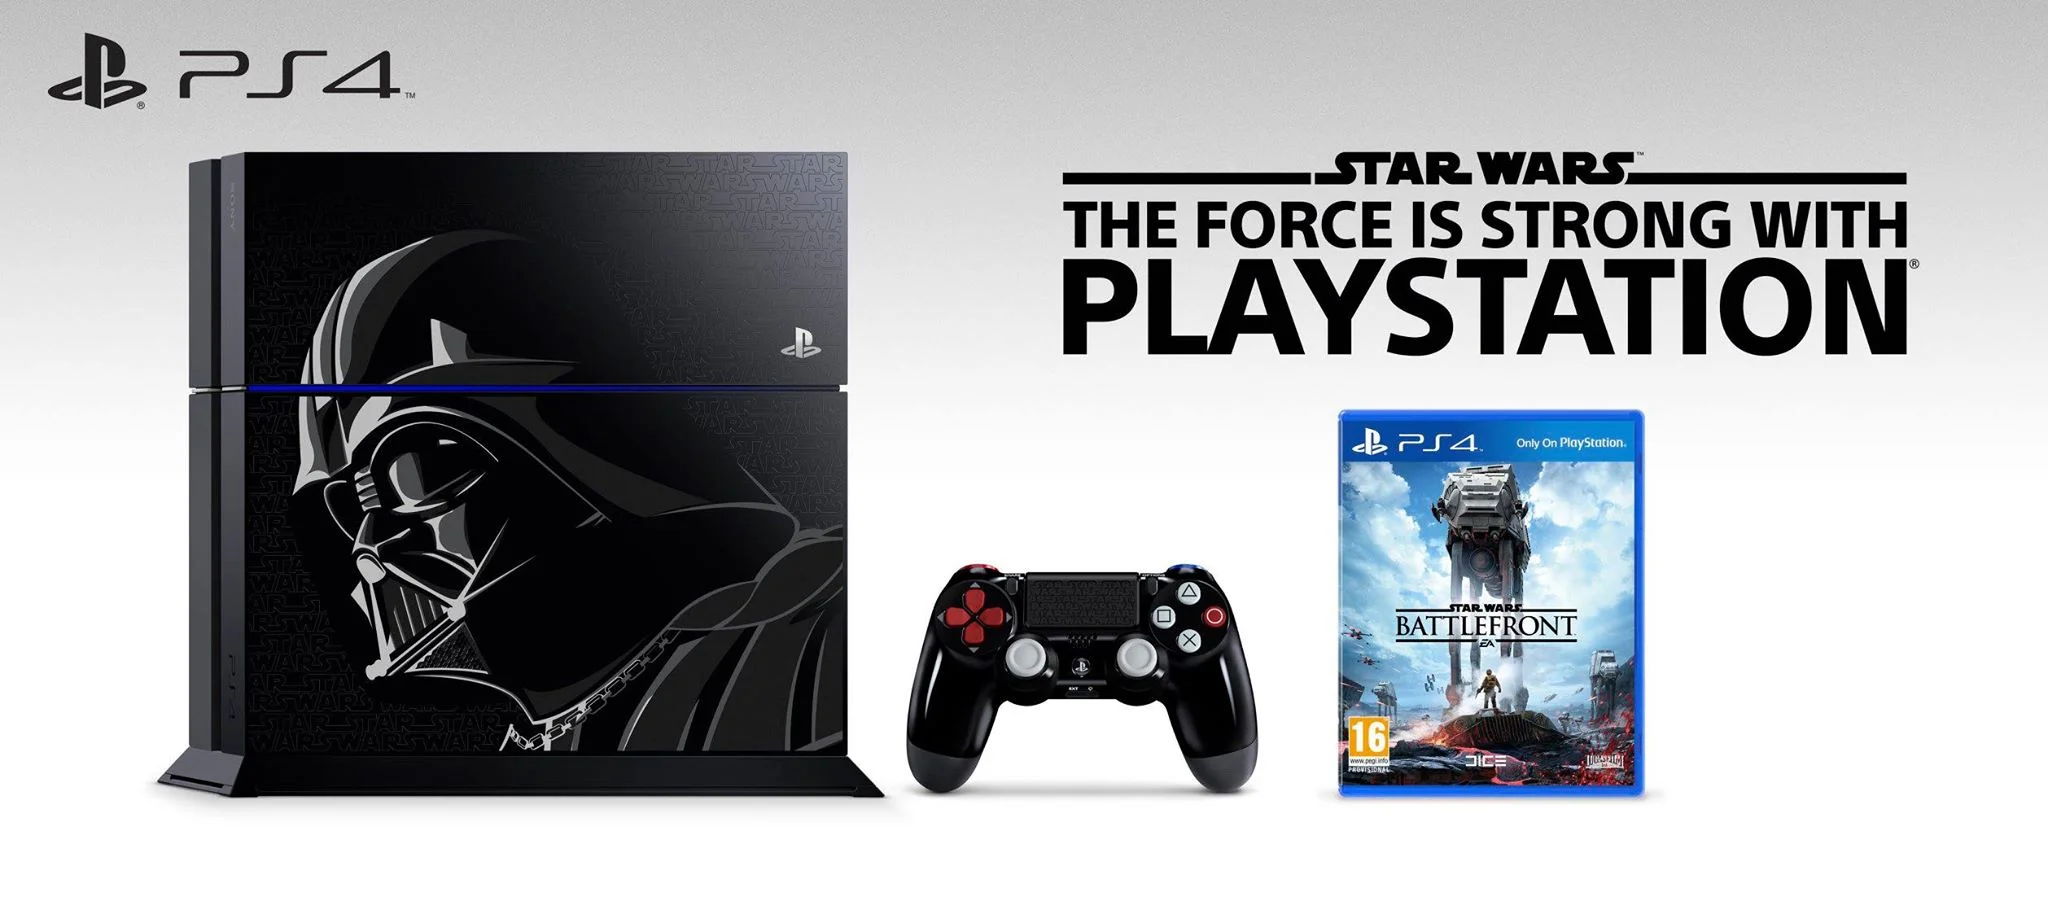 Из SW Battlefront PS4 Bundle отдельно будут продаваться только игры - фото 1